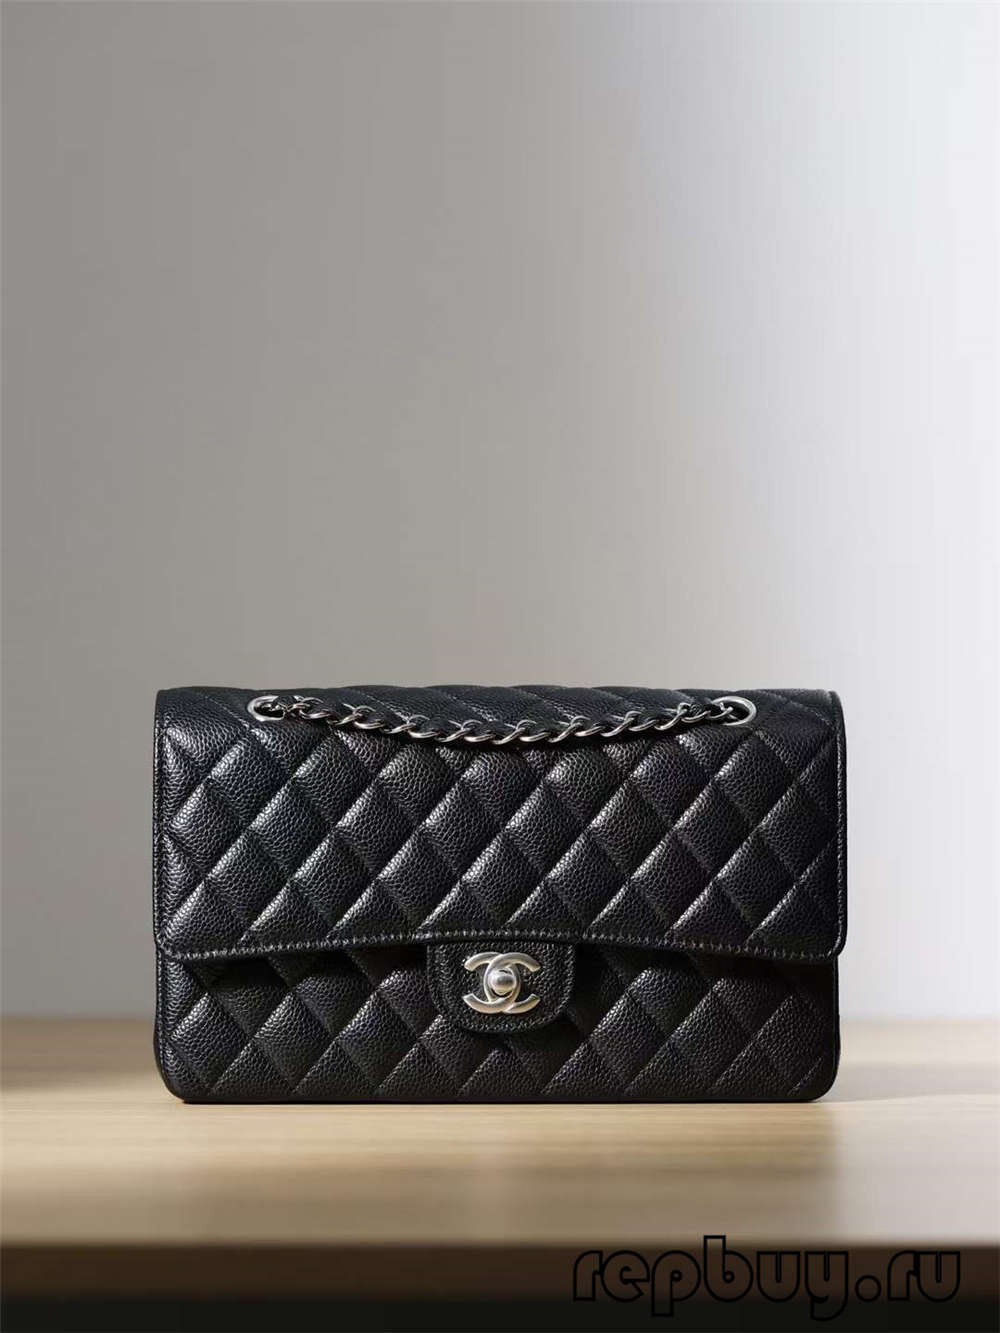 Найкращий підроблений гаманець Chanel, виготовлений зі Справжньої Шкіри!! Chanel Classic Flap Replica - Інтернет-магазин підробленої сумки Louis Vuitton найкращої якості, копія дизайнерської сумки ru